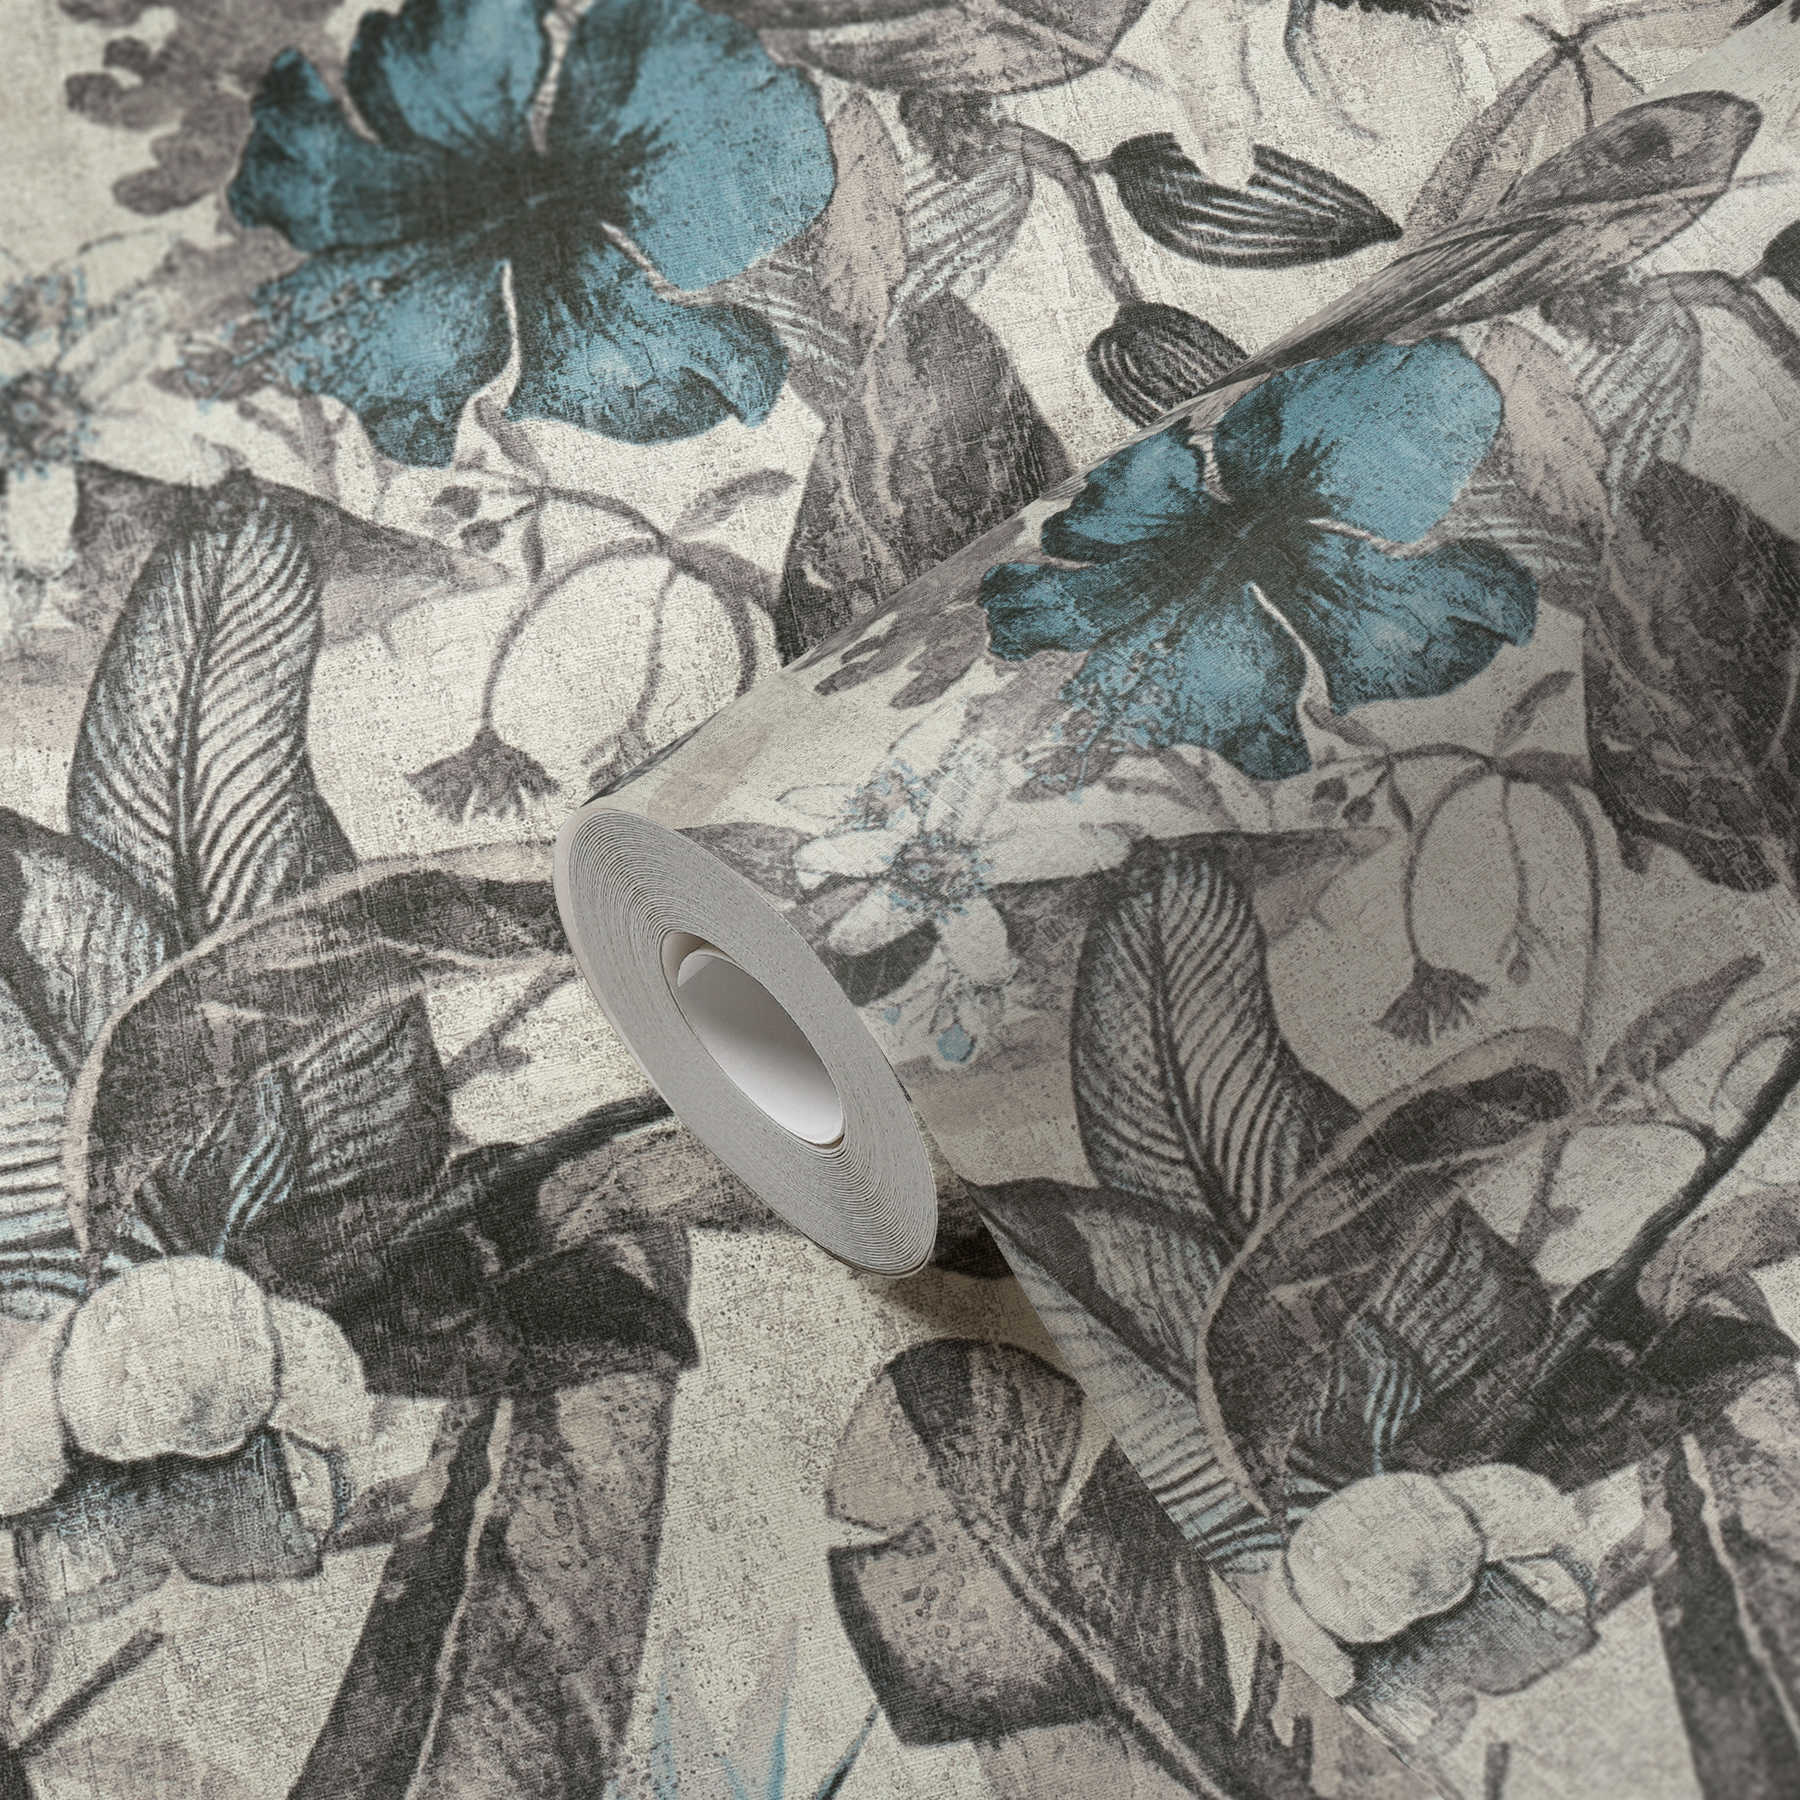             behang tropisch bloemenpatroon in textiellook - blauw, grijs, zwart
        